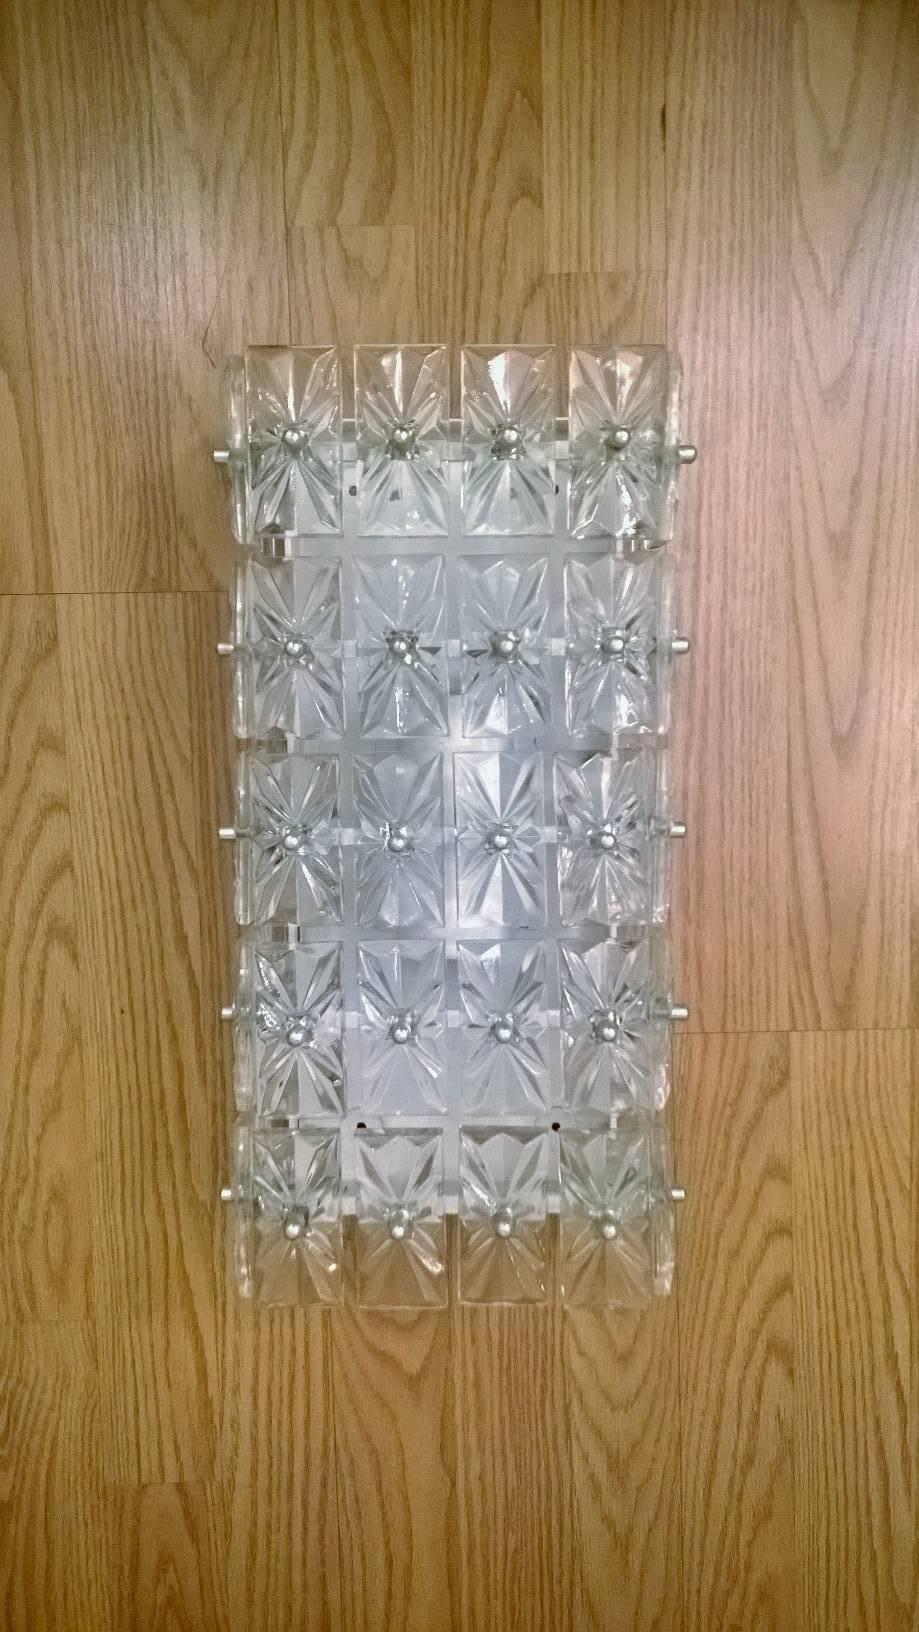 Ein wunderschönes Paar großer österreichischer Kristallleuchter aus den 1960er Jahren, bestehend aus einer weißen Emaillefassung und verchromten Beschlägen, die rechteckige Kristalle halten. Neu verkabelt.